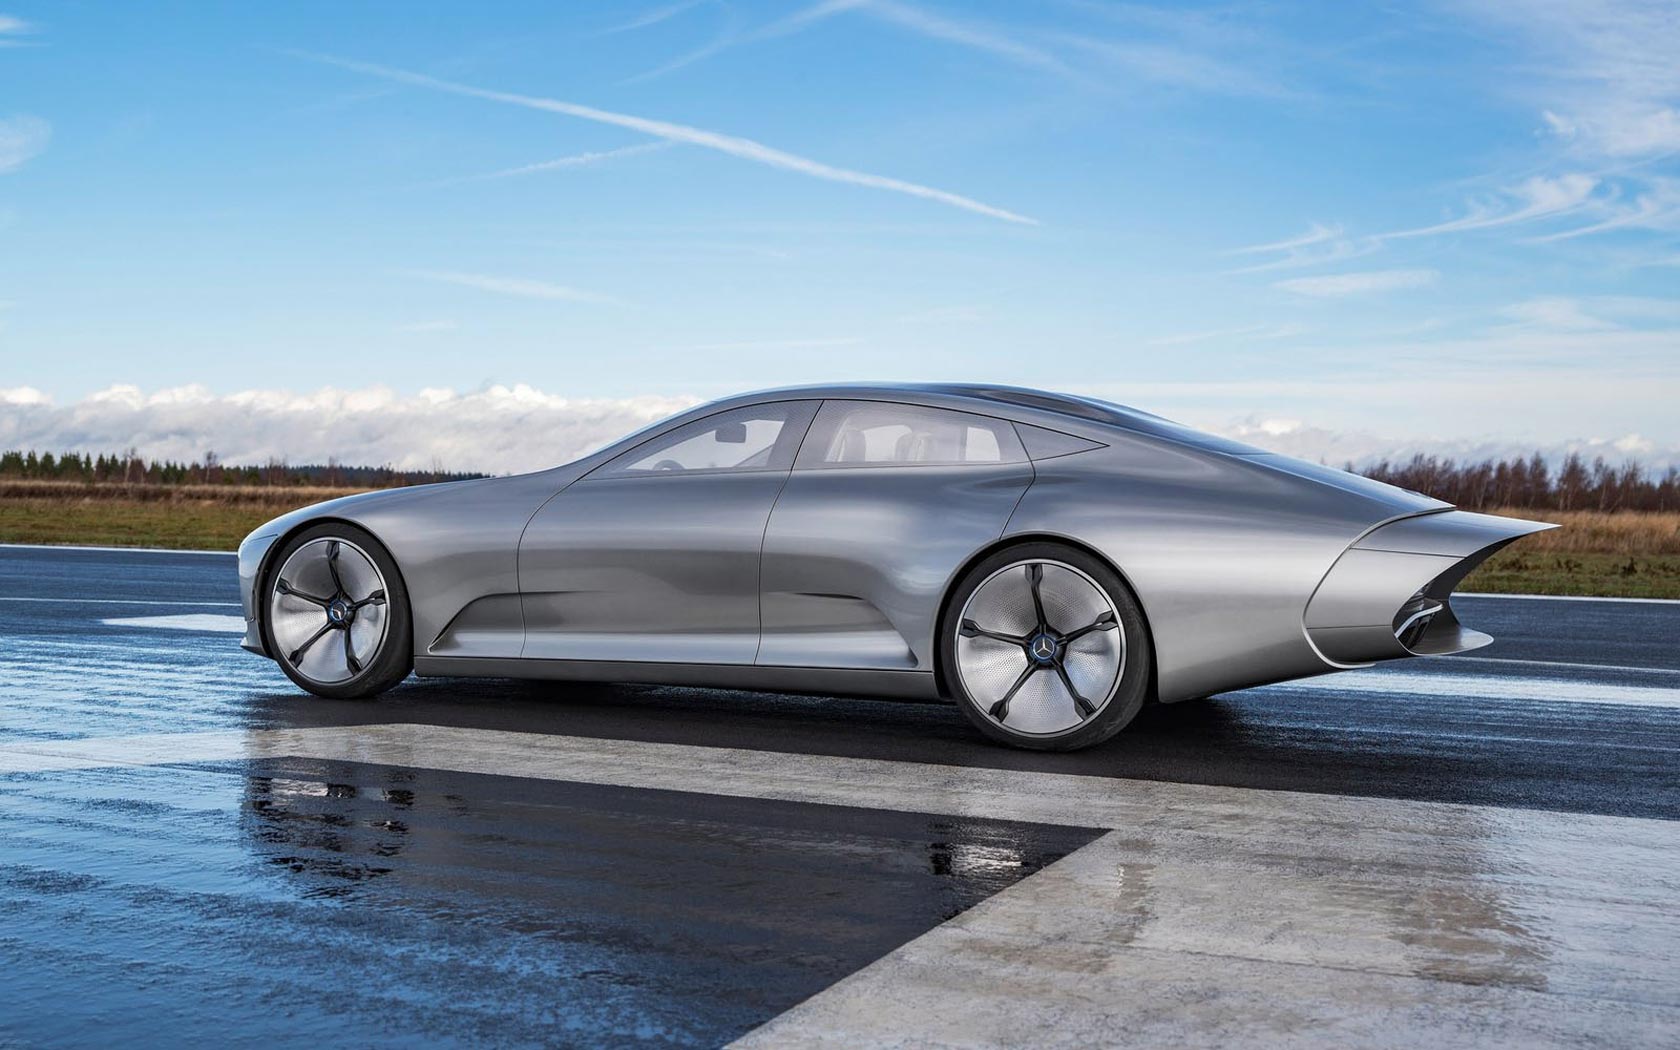  Mercedes IAA Concept 